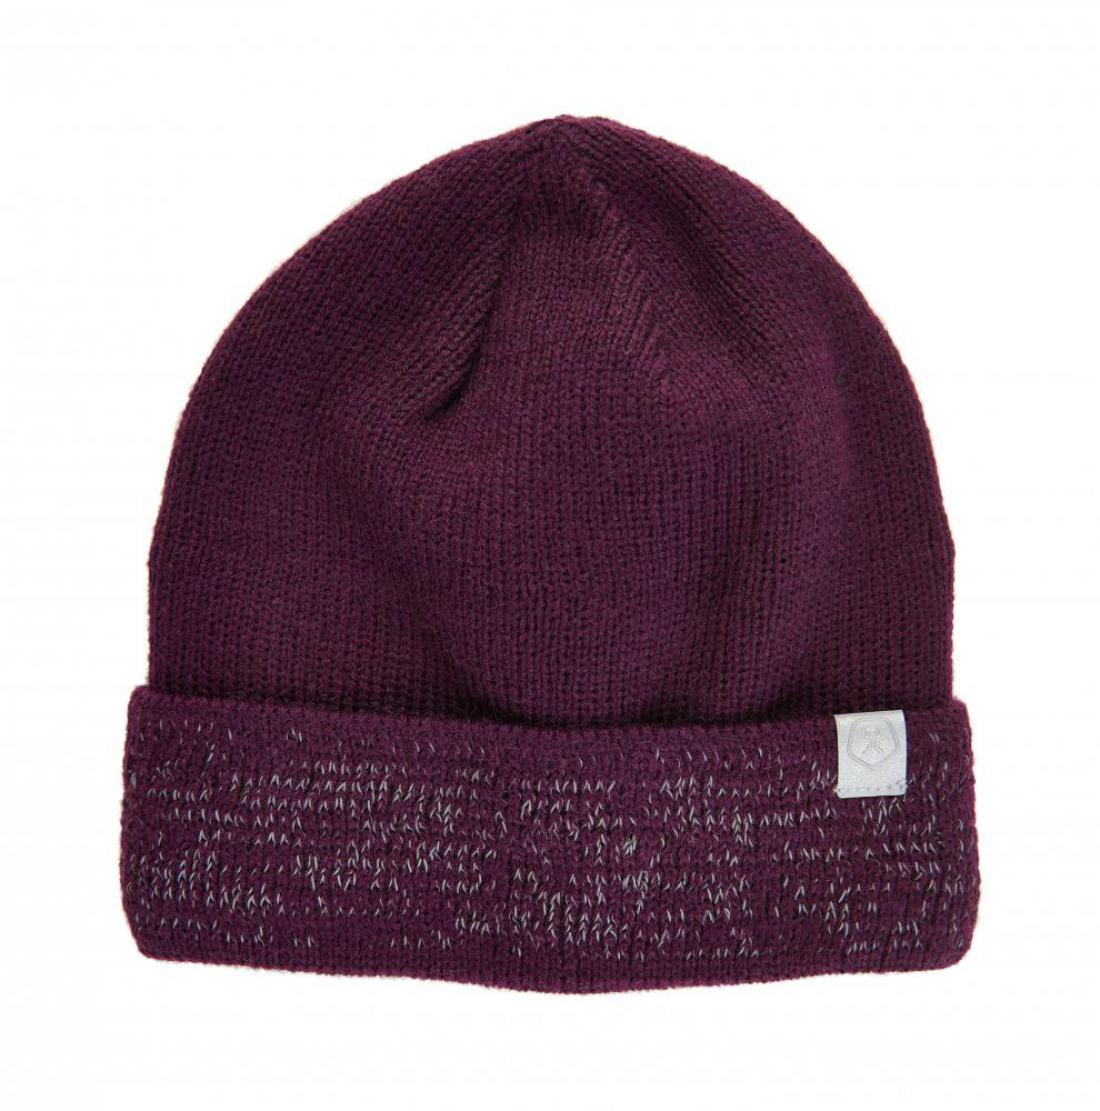 Hat, w. reflective knitting, potent purple, size 56